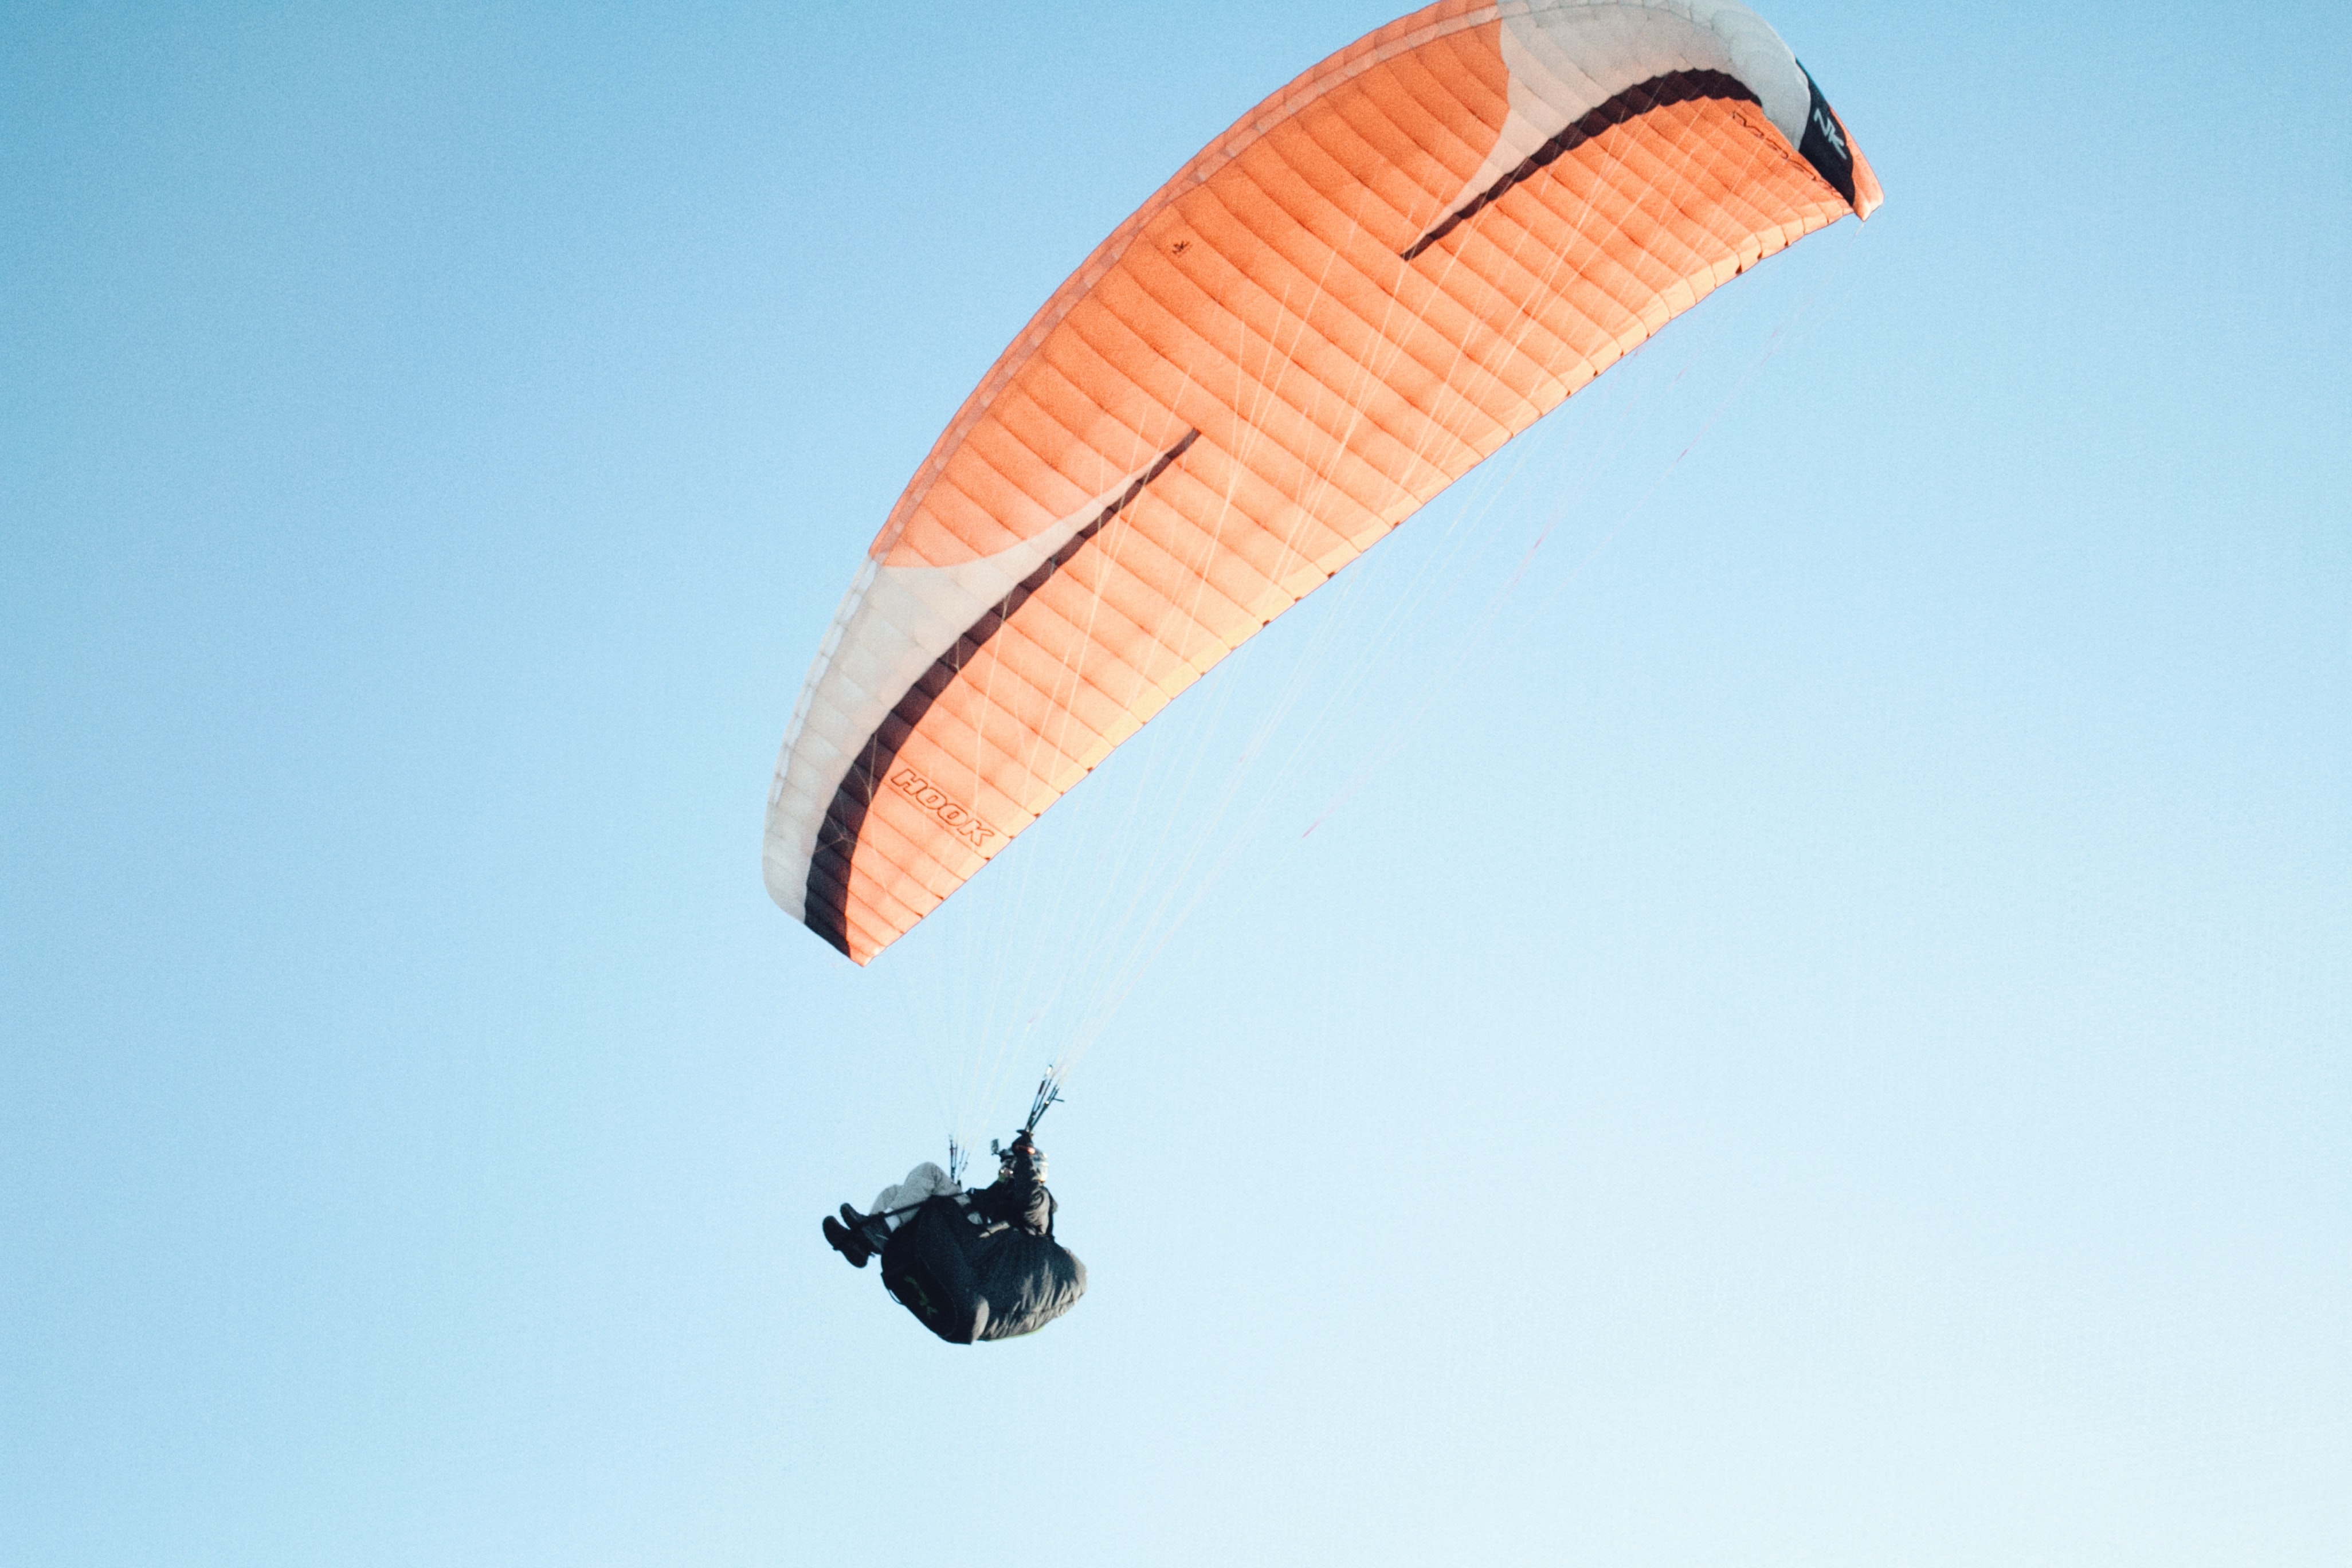 Paragliding by Vicente Núñez on Unsplash.